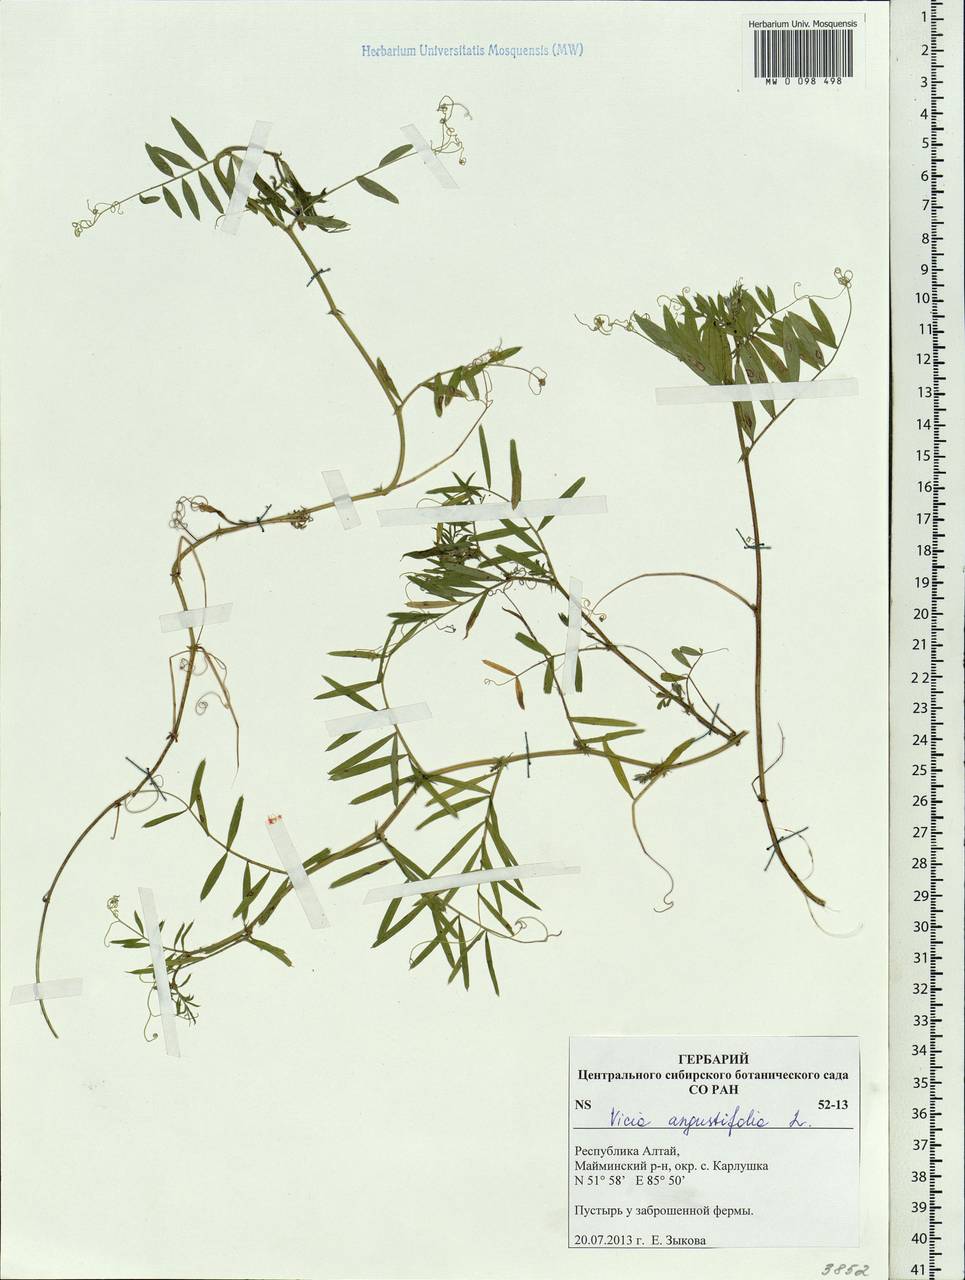 Vicia sativa subsp. nigra (L.)Ehrh., Siberia, Altai & Sayany Mountains (S2) (Russia)